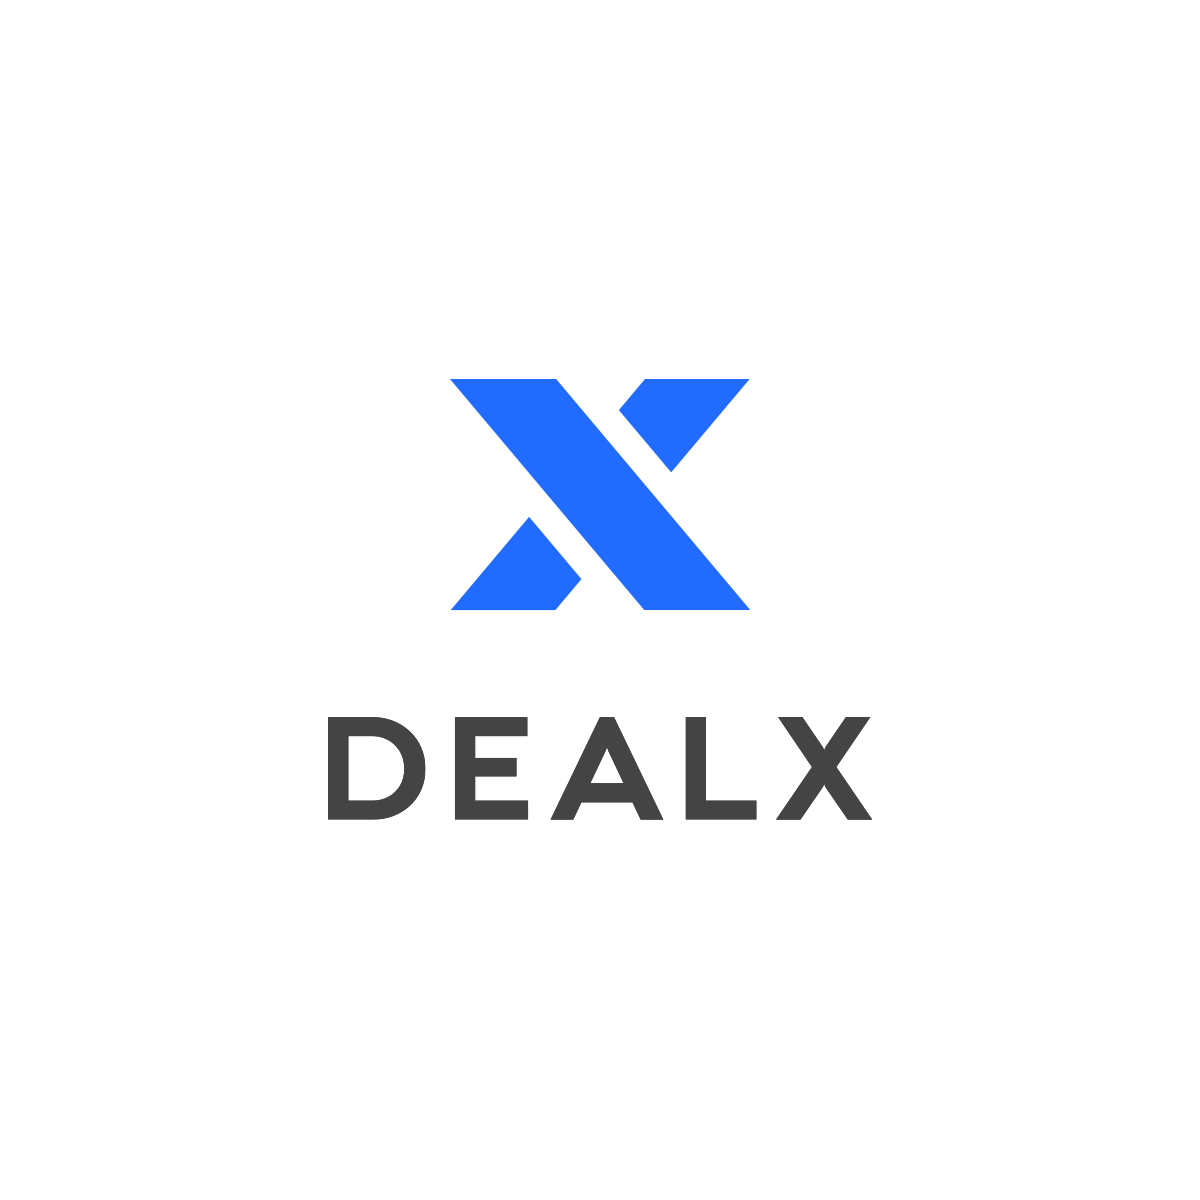 Dealx logo